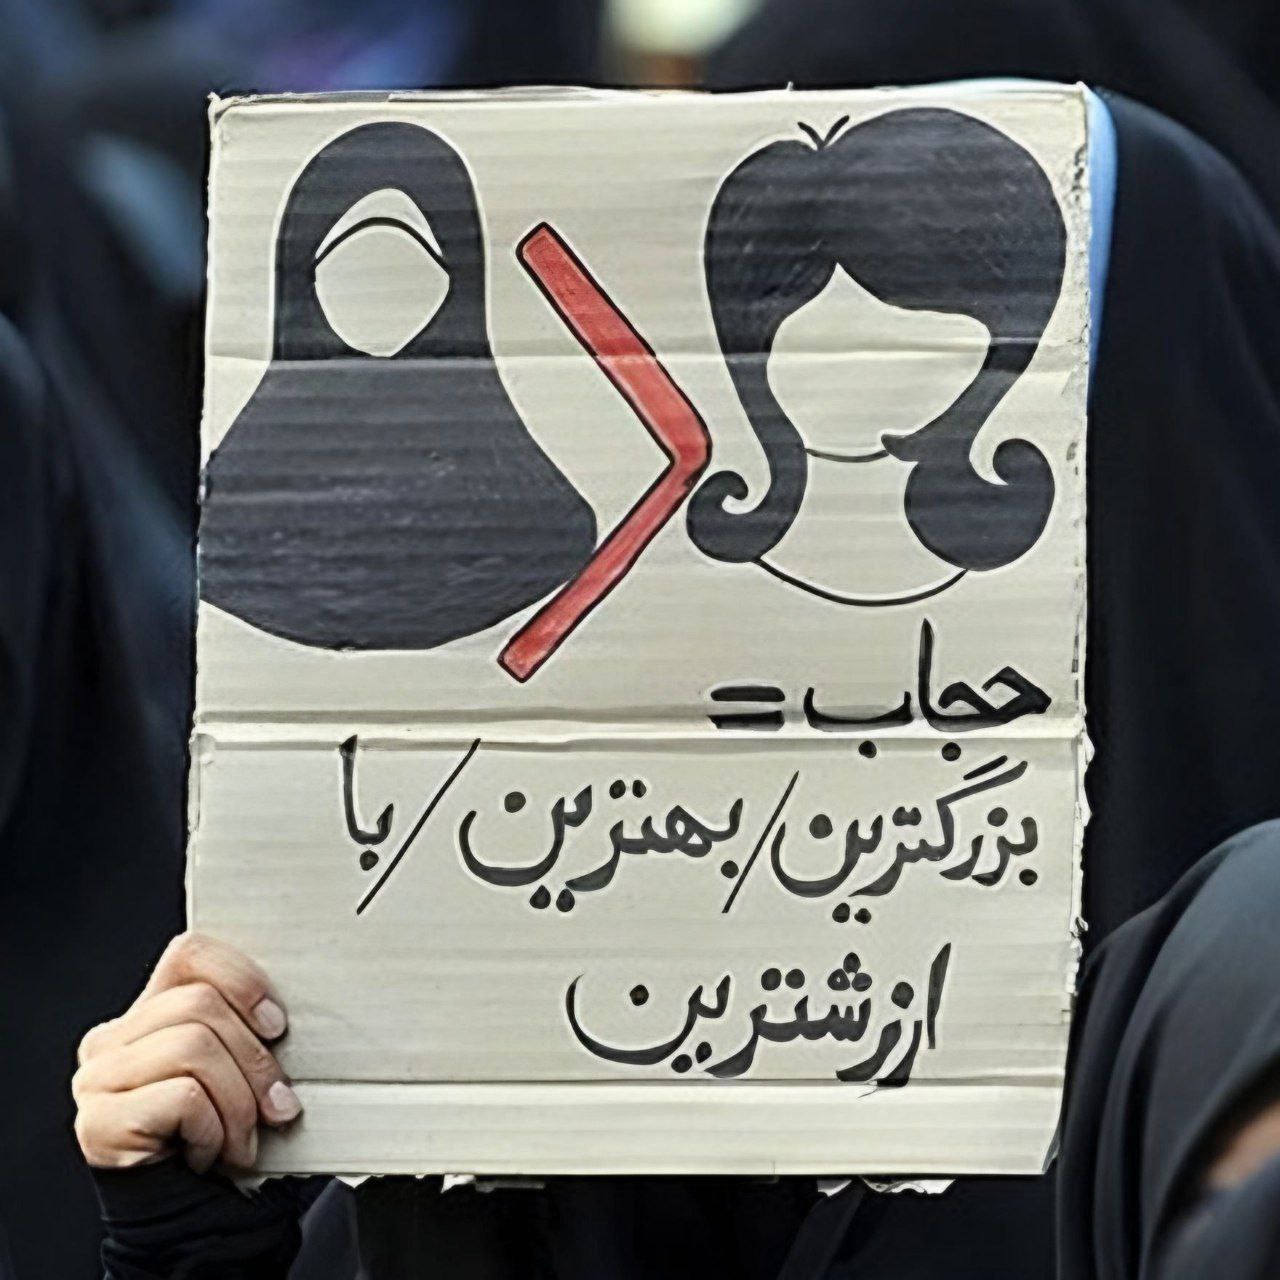 تصویری از یک پلاکارد متفاوت در تجمع حجاب